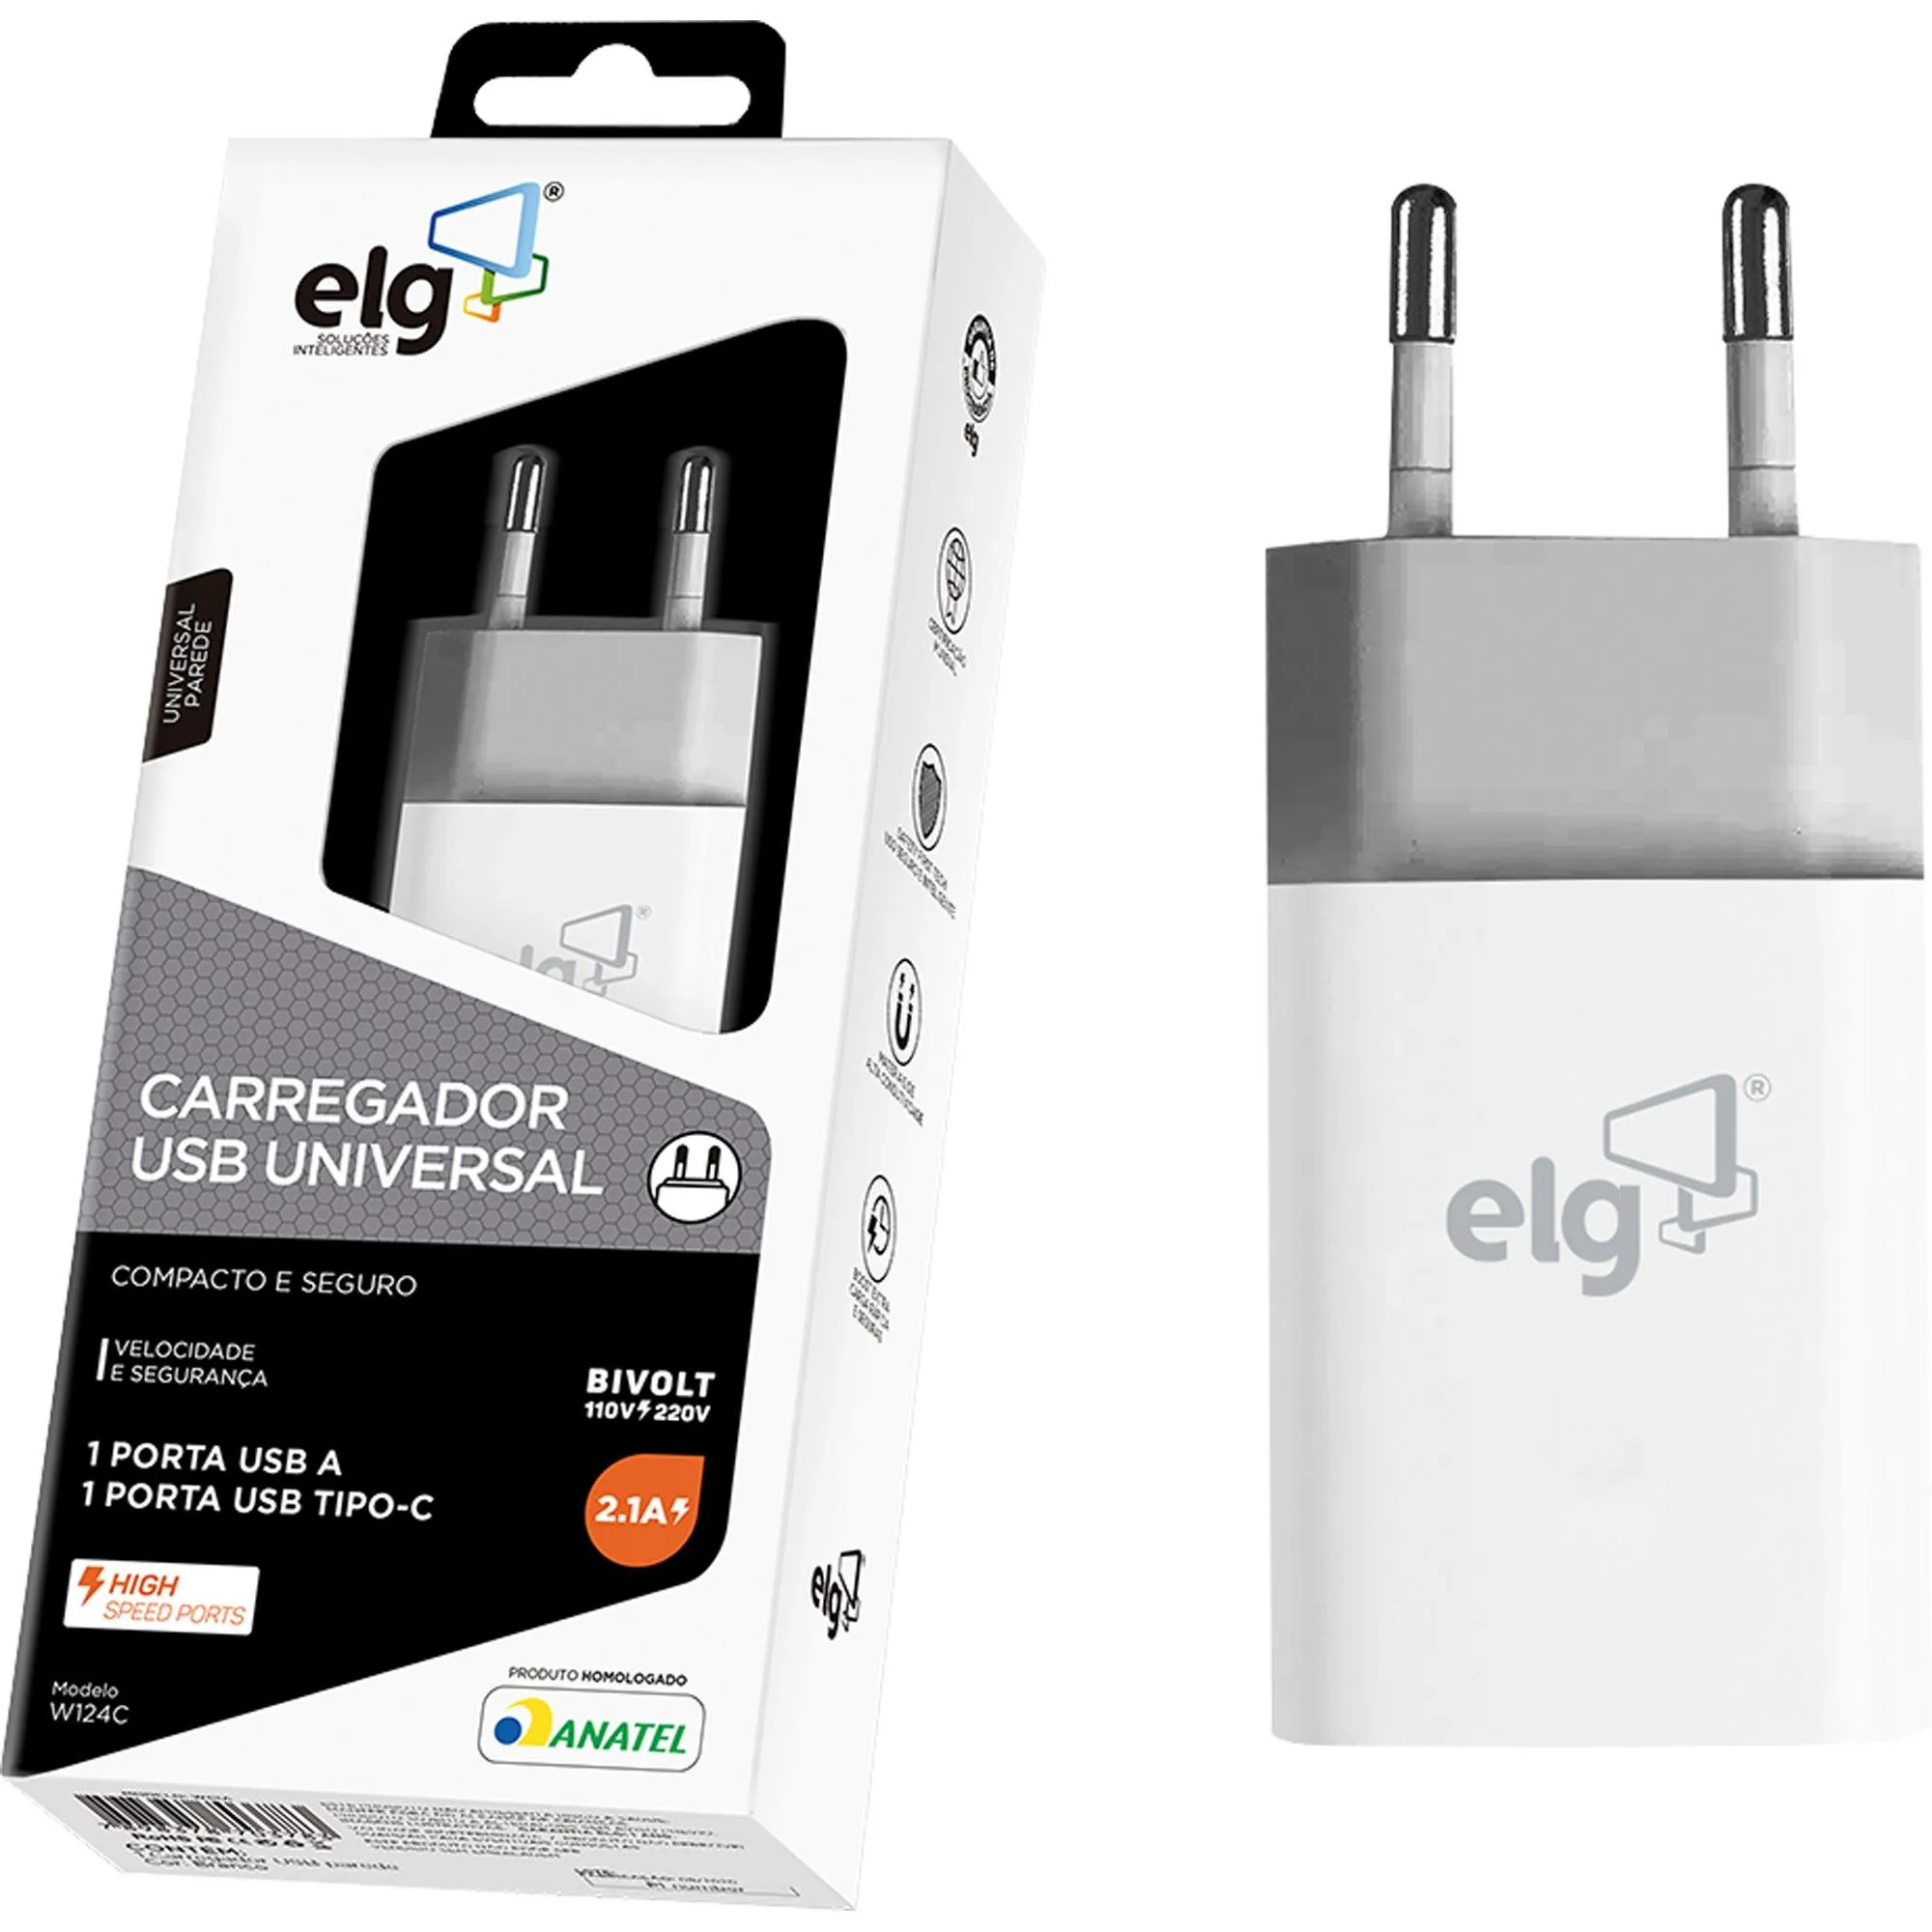 Carregador USB Tipo C + USB 2.1A W124 Branco ELG por 49,99 à vista no boleto/pix ou parcele em até 1x sem juros. Compre na loja Mundomax!